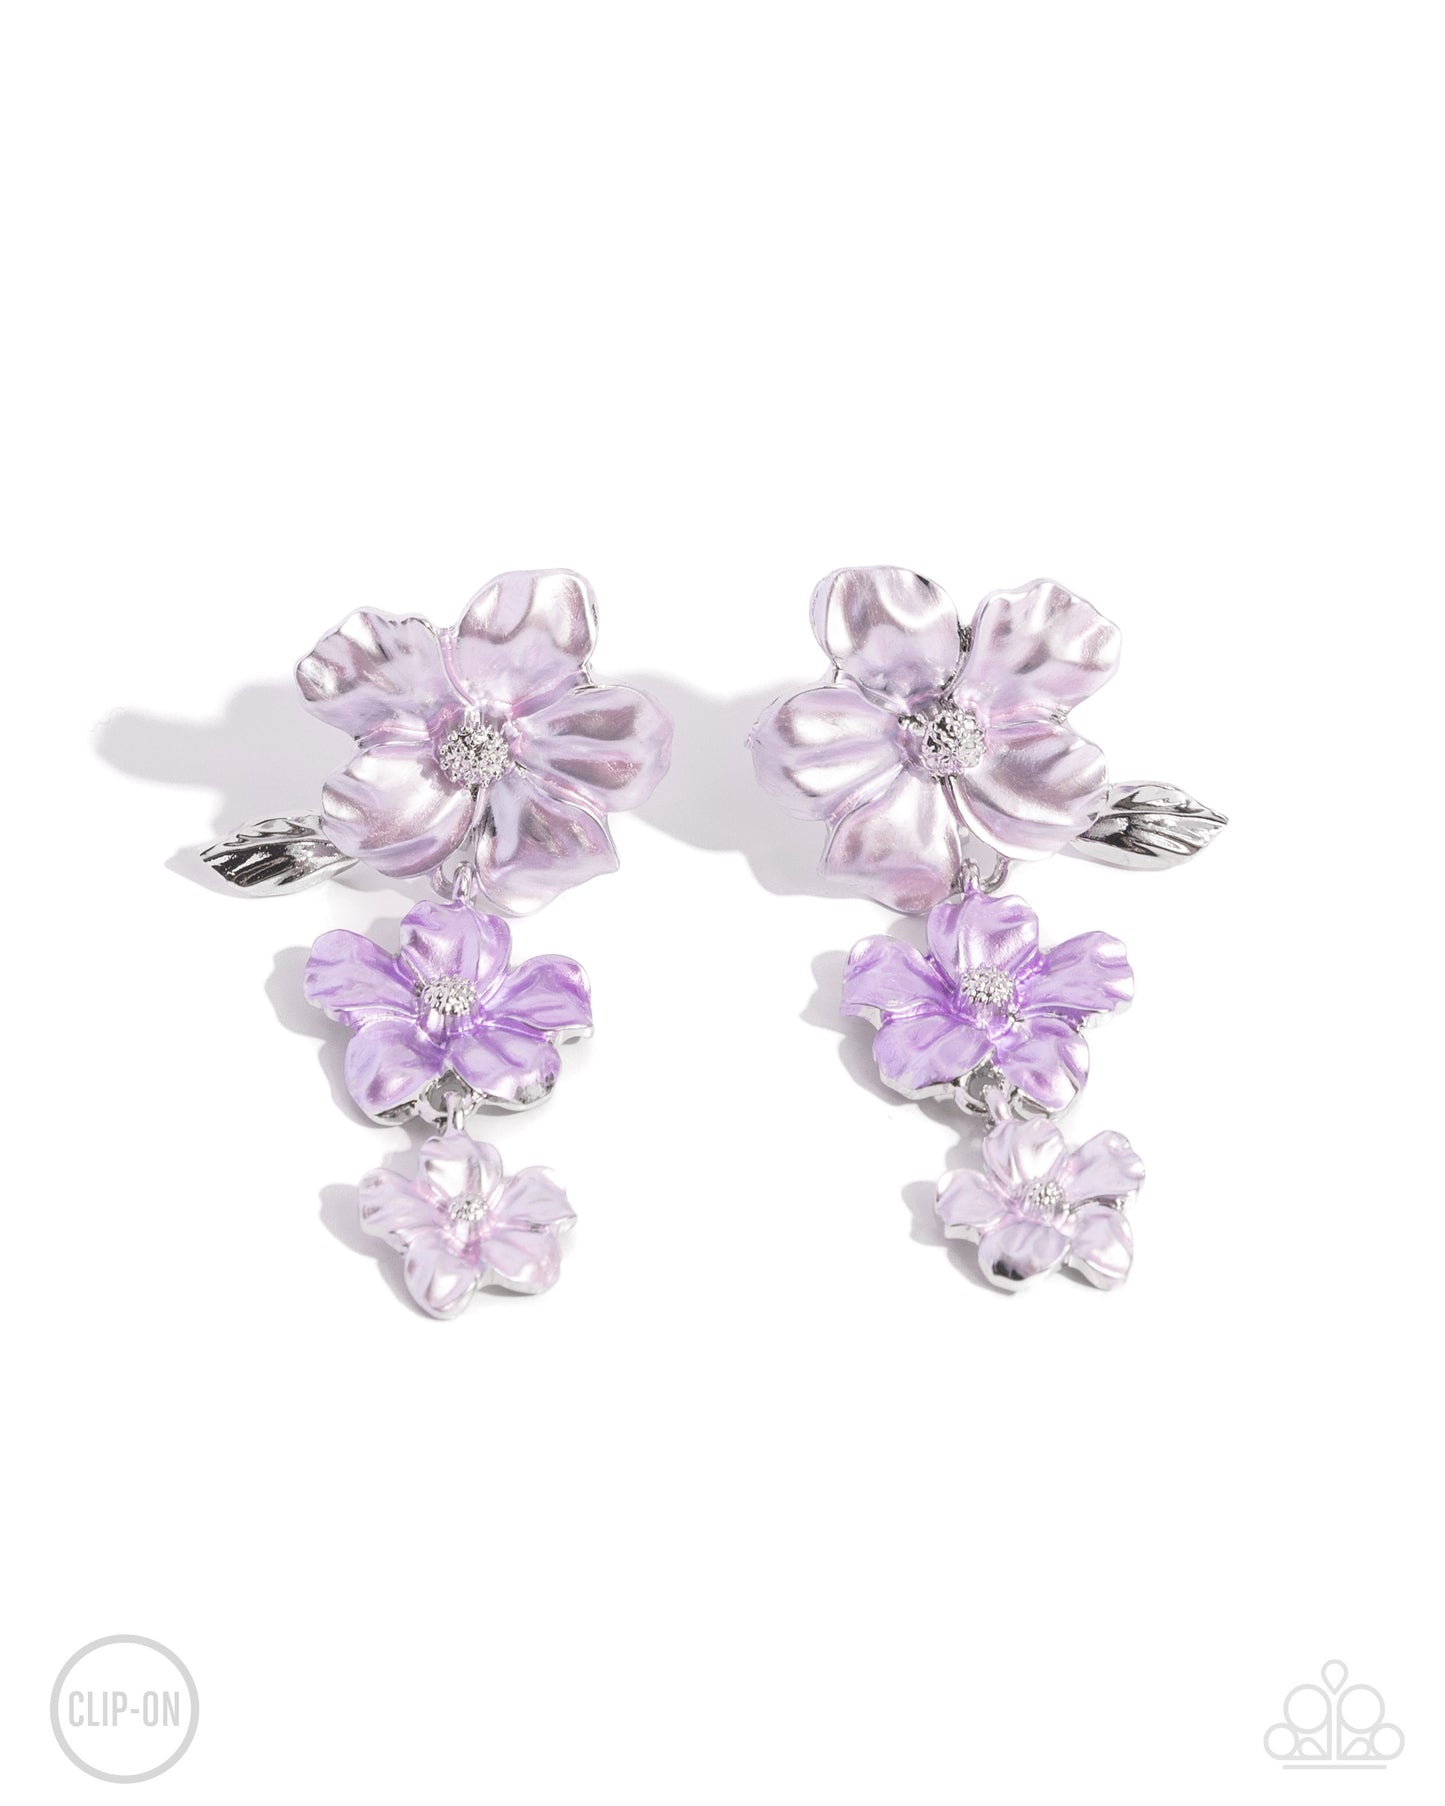 Bouquet Brilliance - Purple necklace- Balanced Bouquet - Purple earrings $10 Set